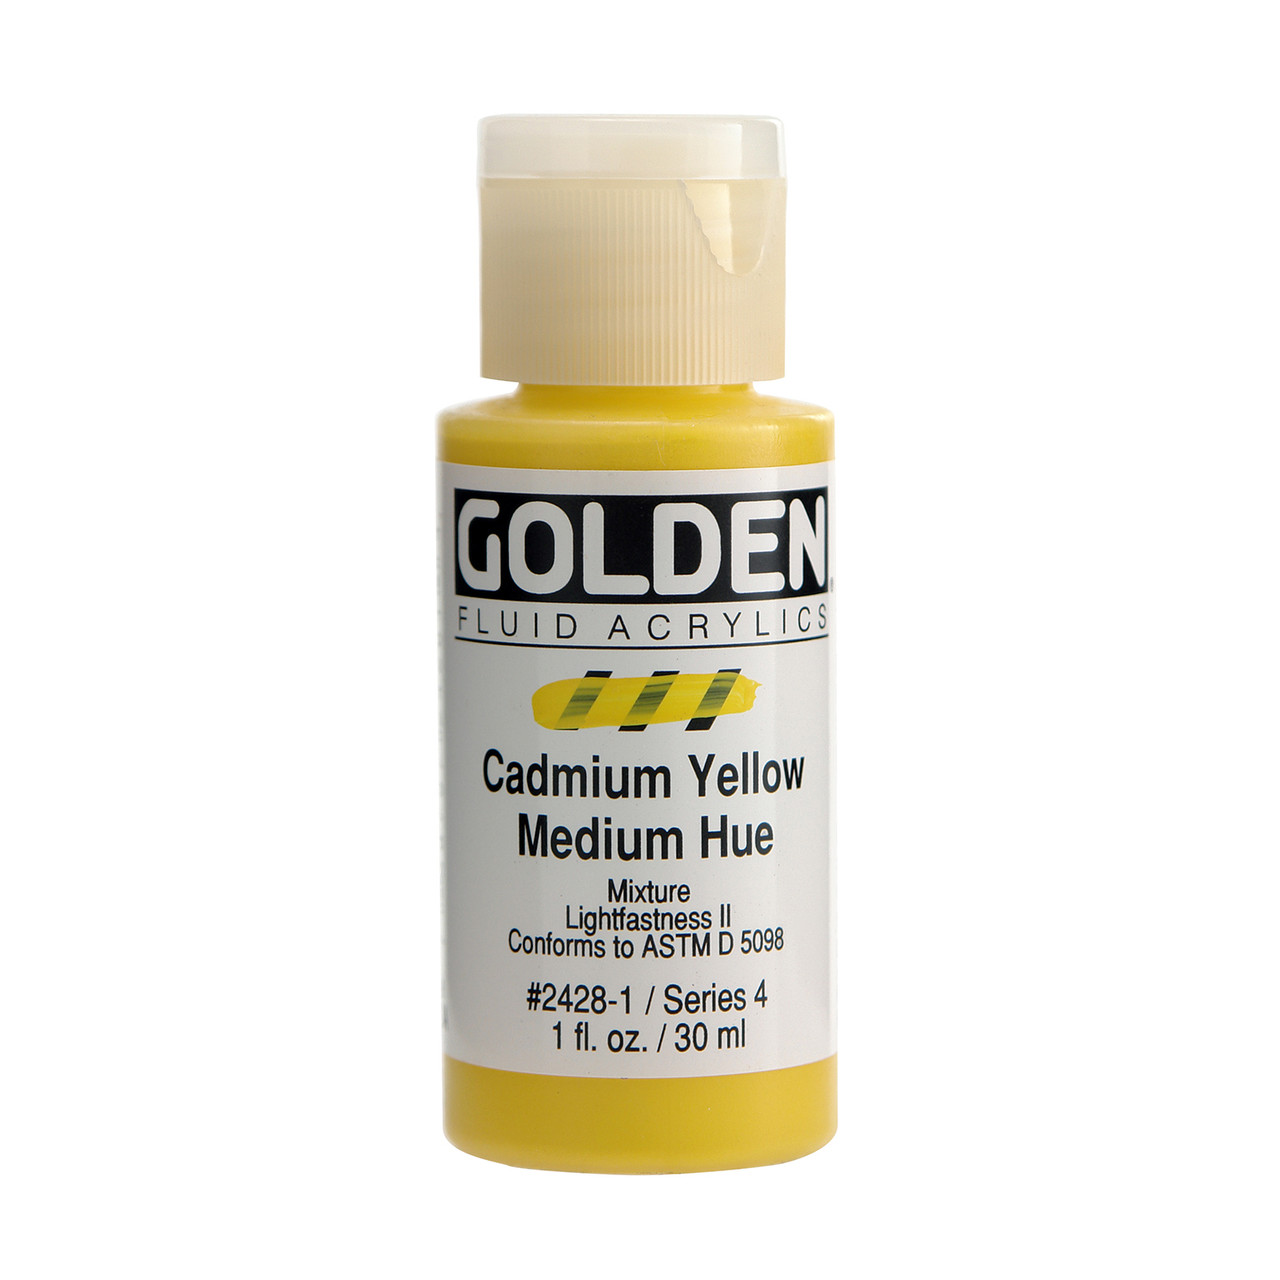 Cadmium Yellow Medium Hue Colors